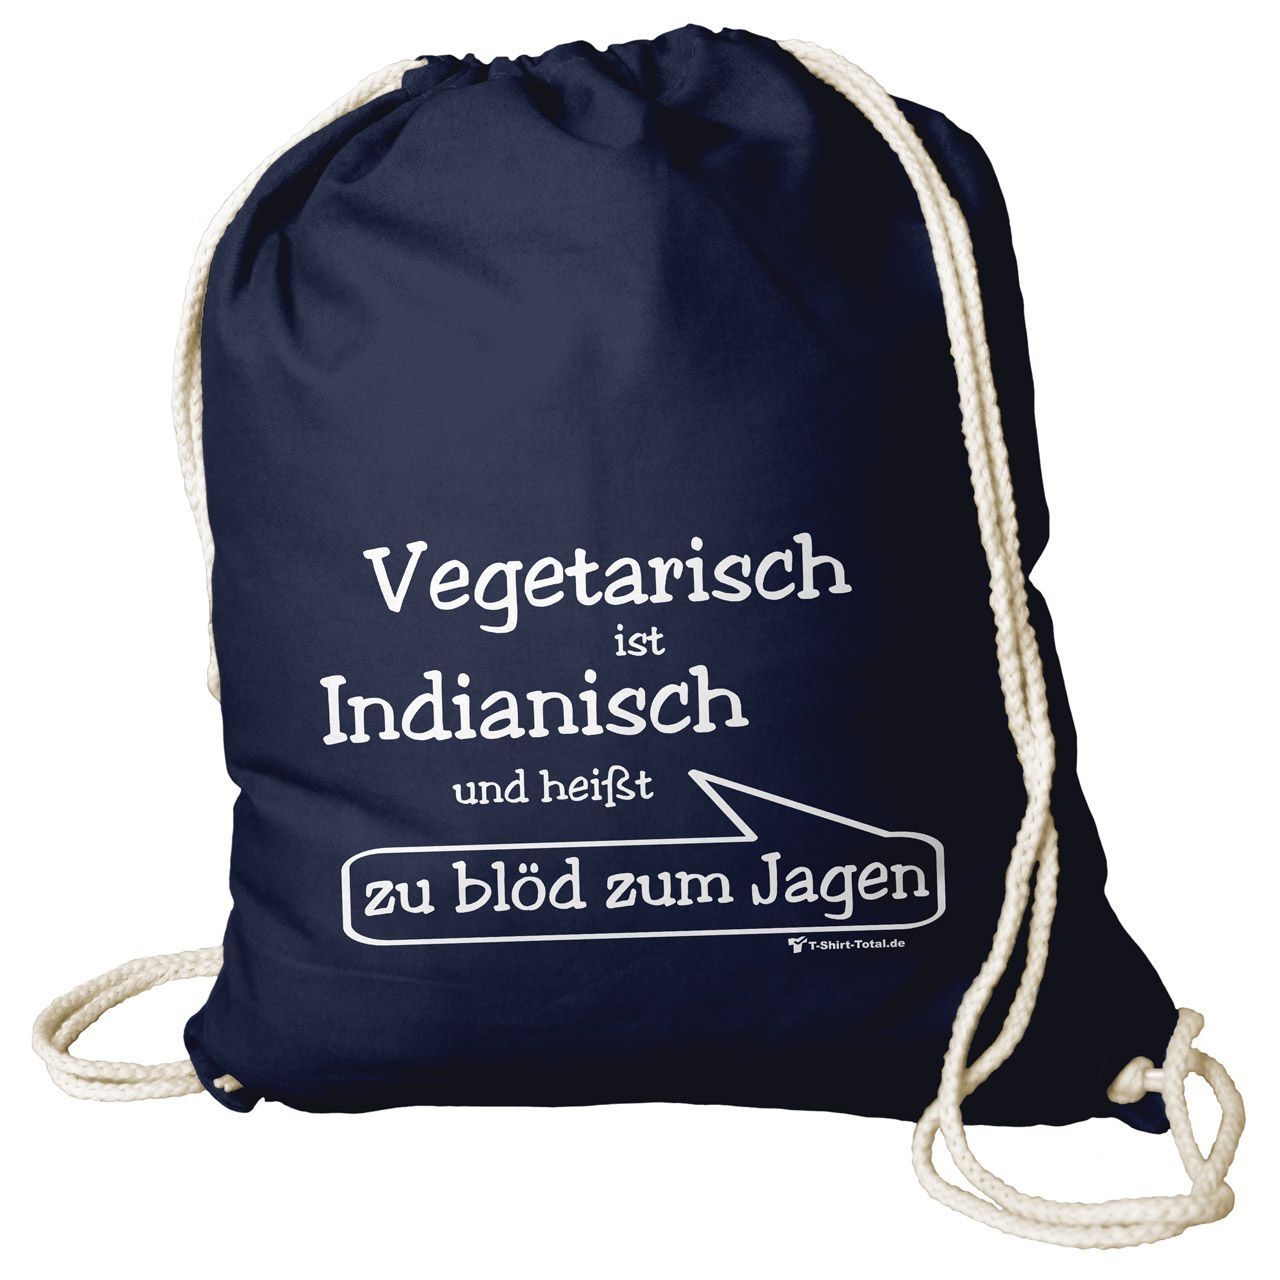 Vegetarisch Rucksack Beutel navy